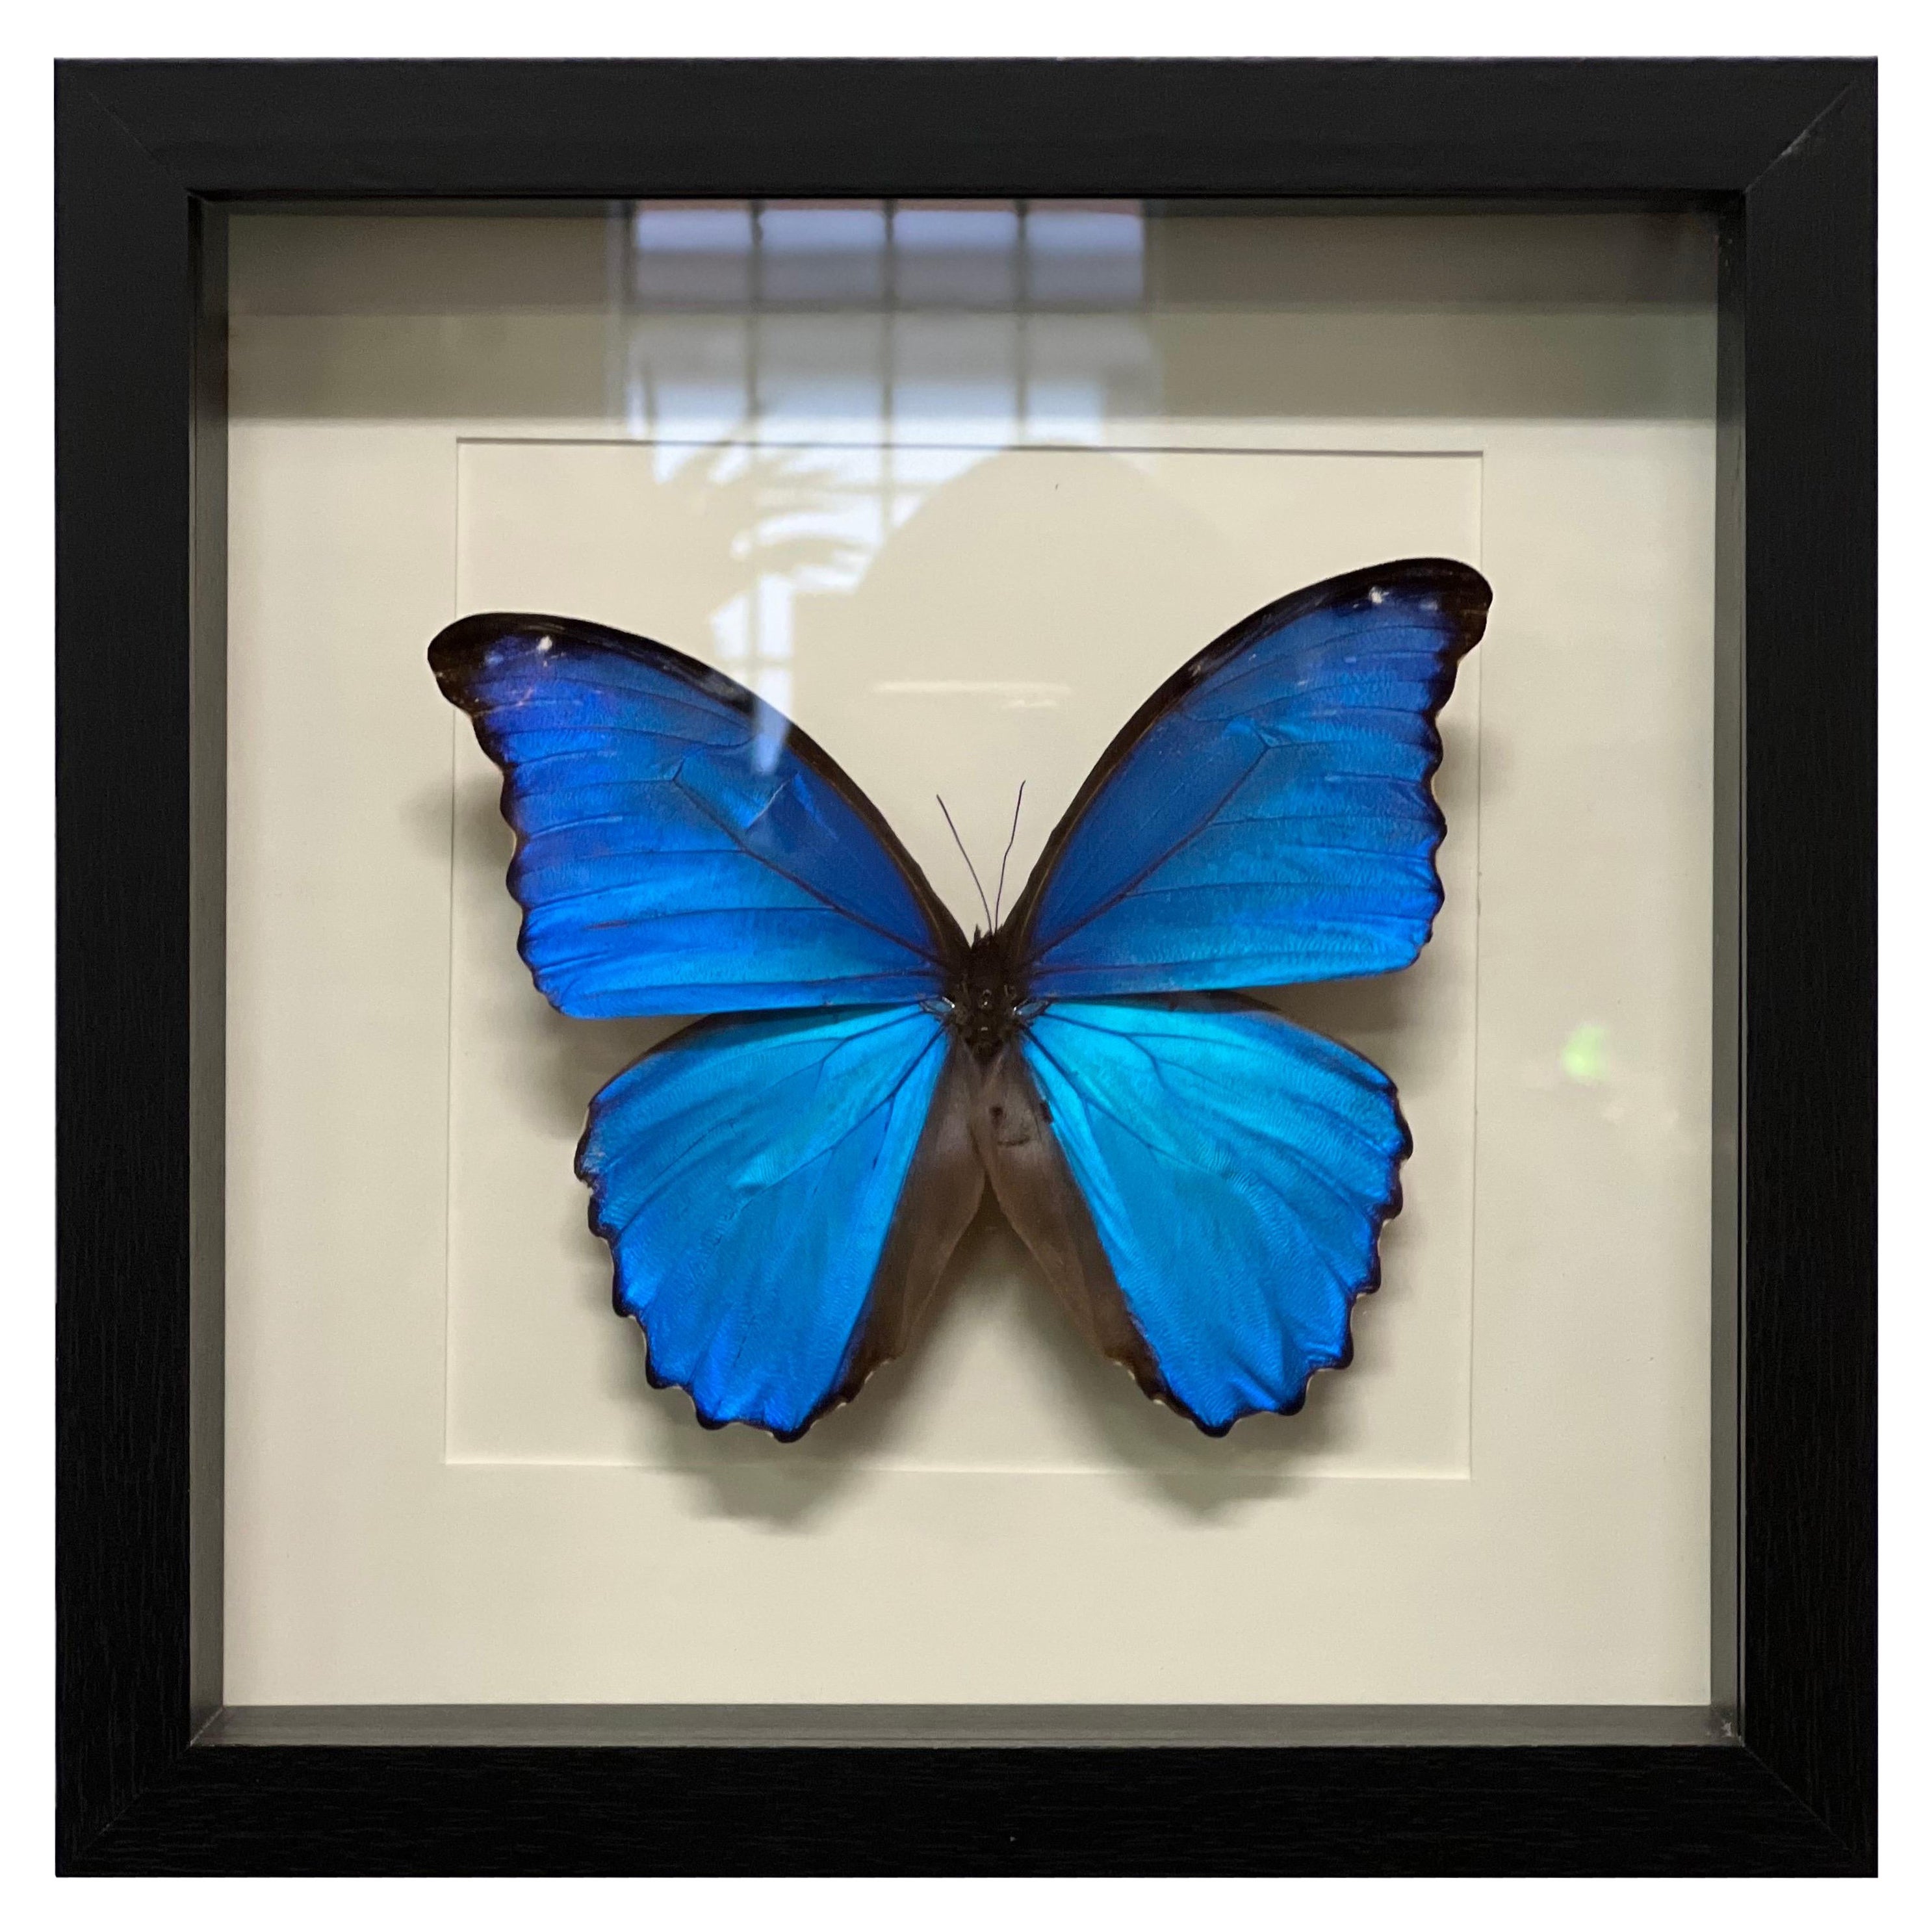 Morpho Butterfly in Frame